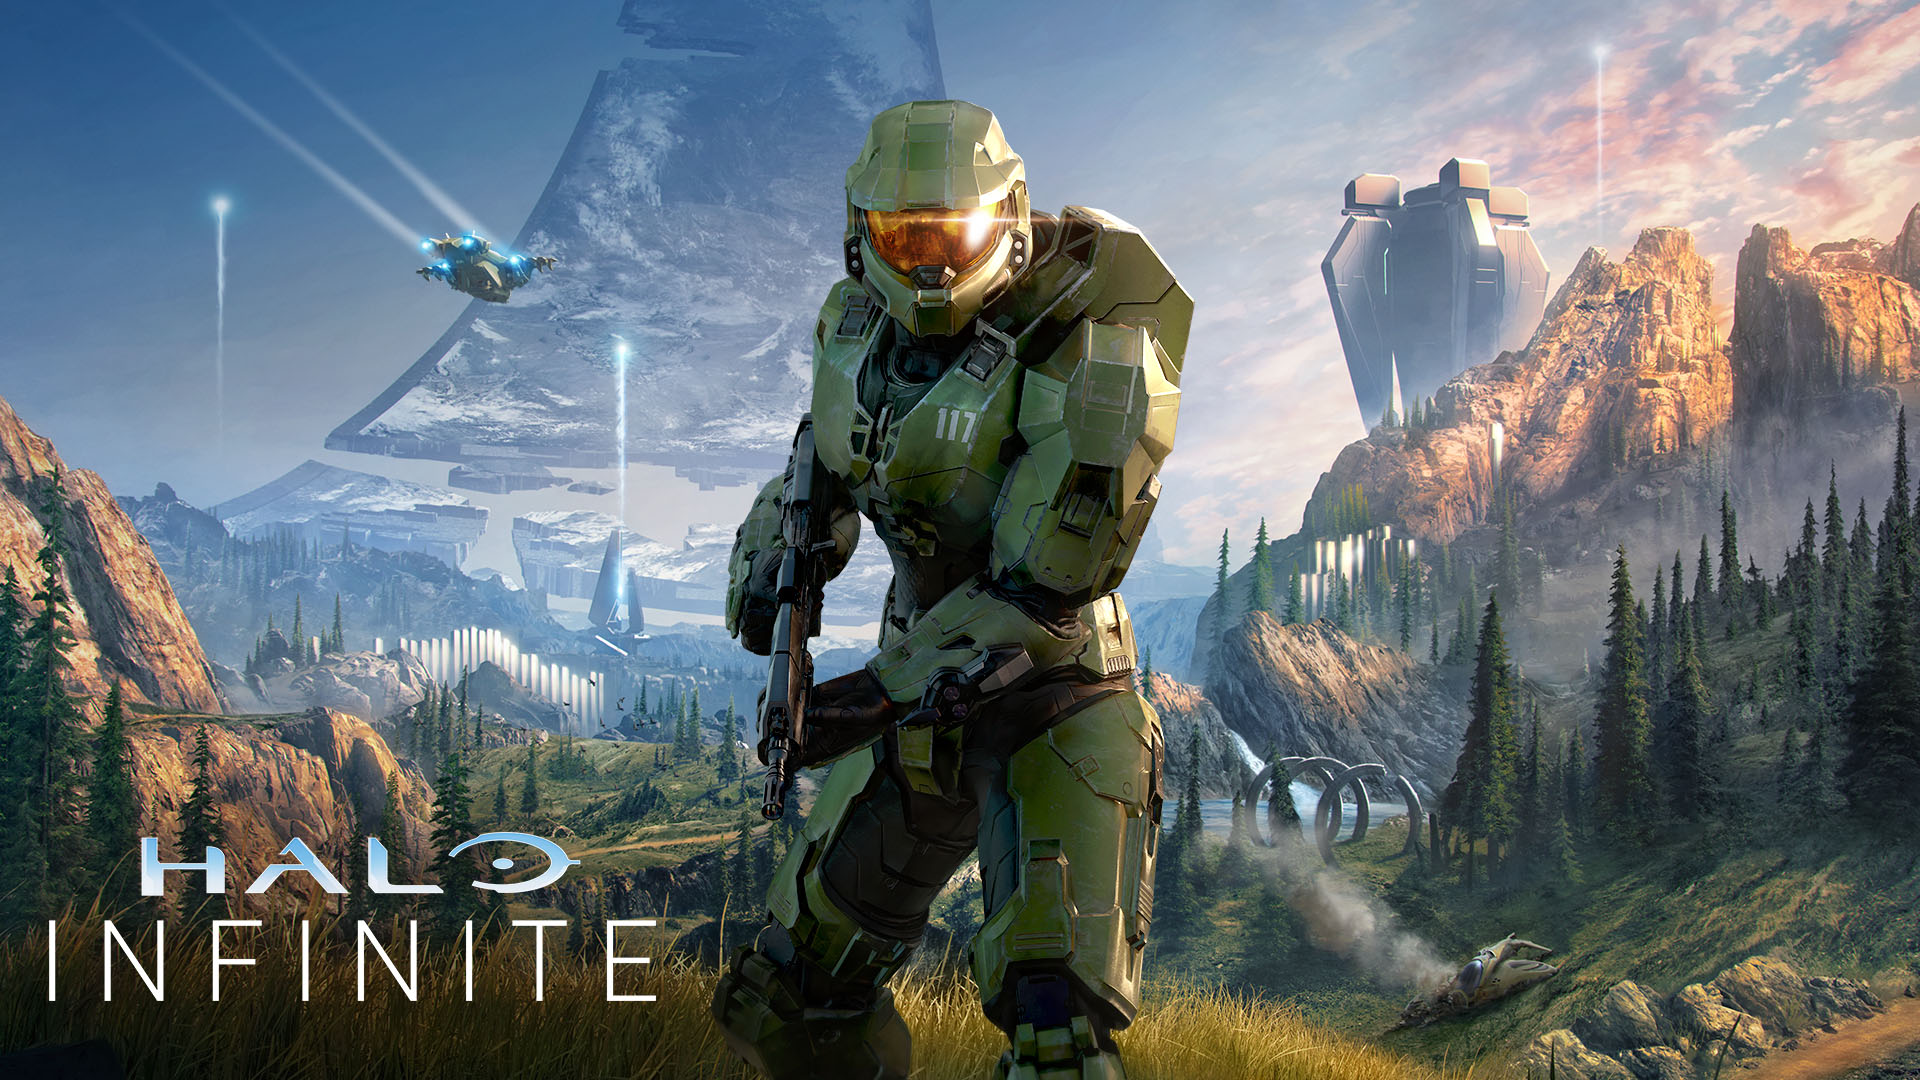 گرافیک بازی Halo Infinite و حواشی مربوط به آن